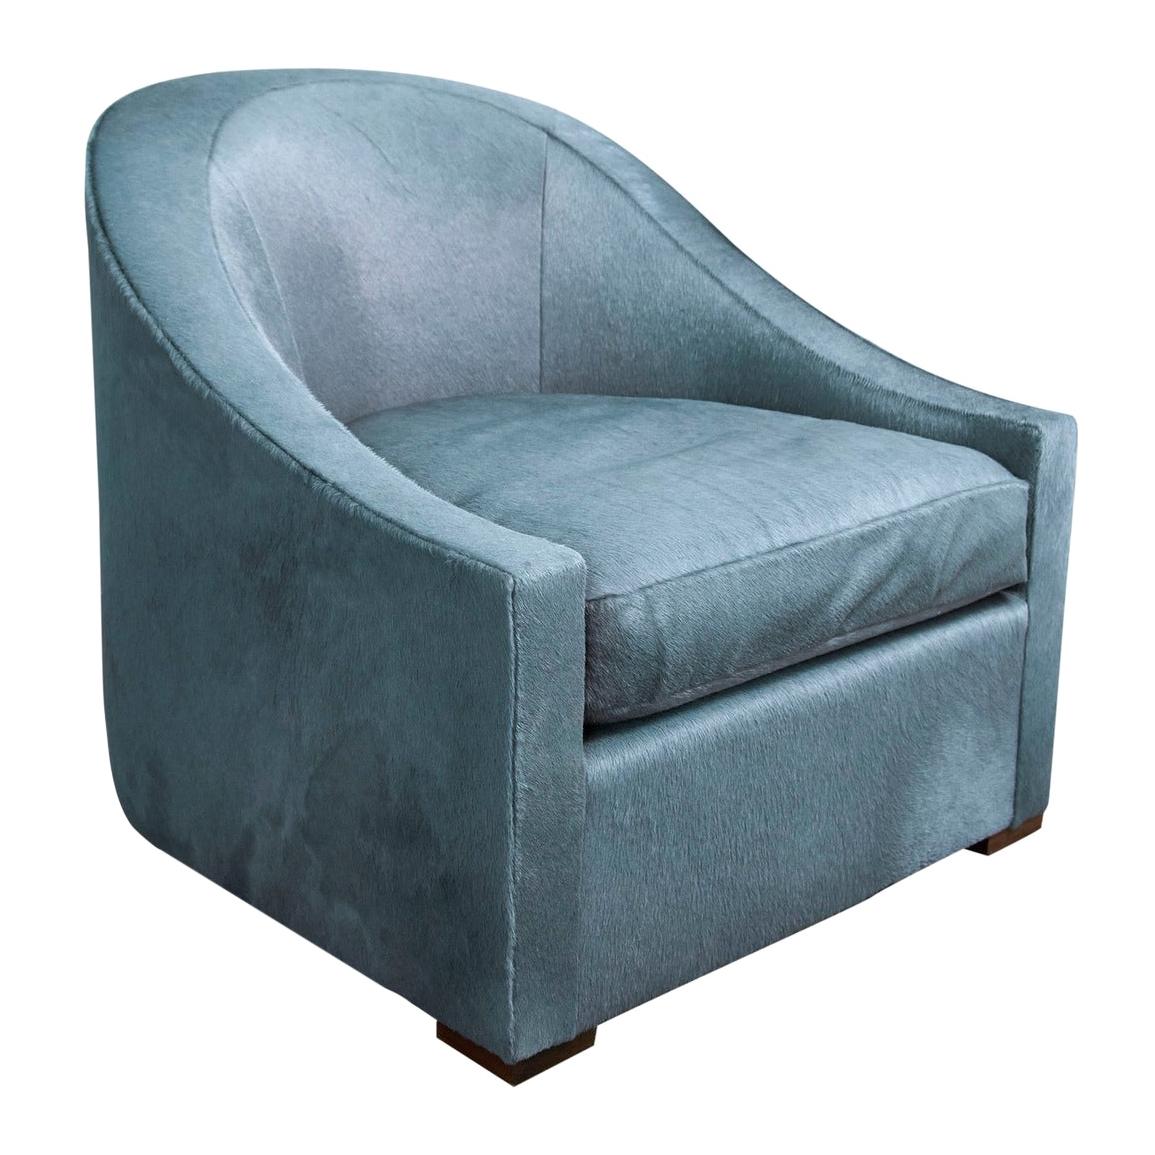 Beekman Lounge Chair For Sale